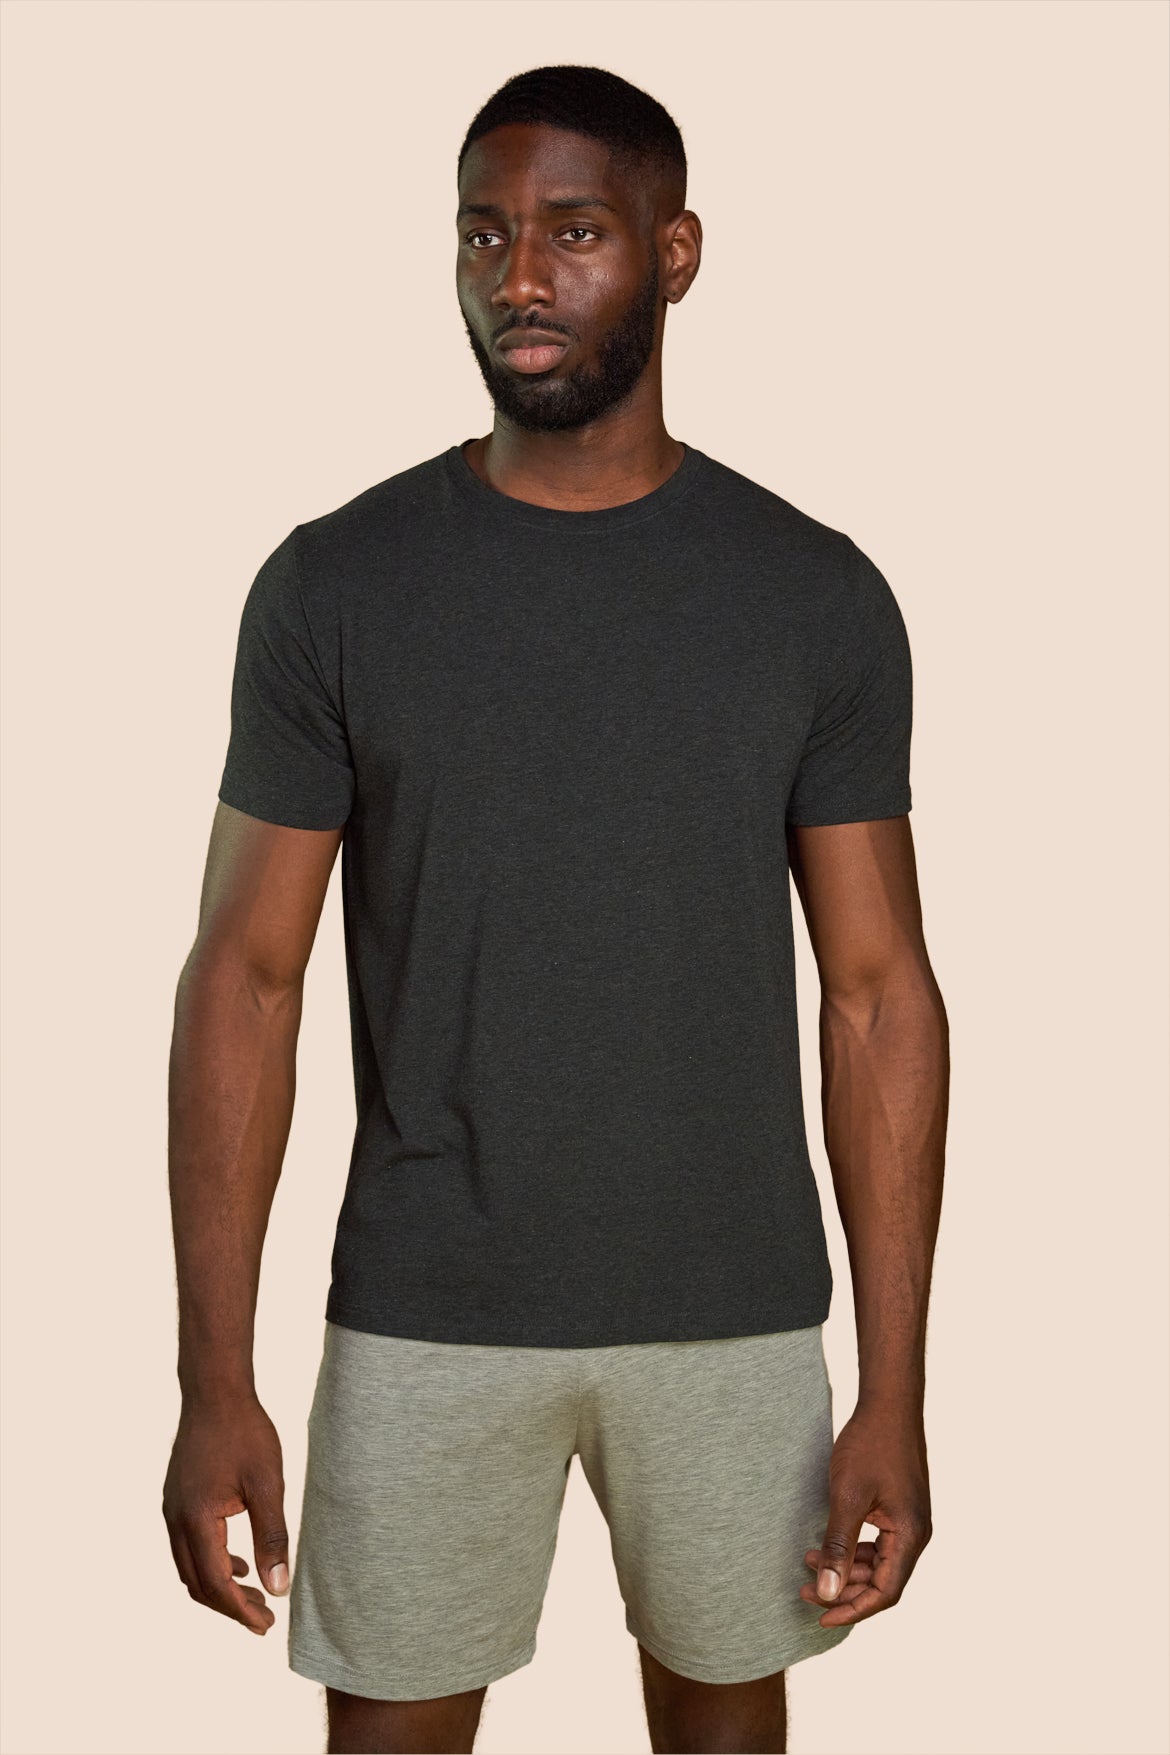 Pétrone T-shirt manches courtes coton pima micromodal gris anthracite homme